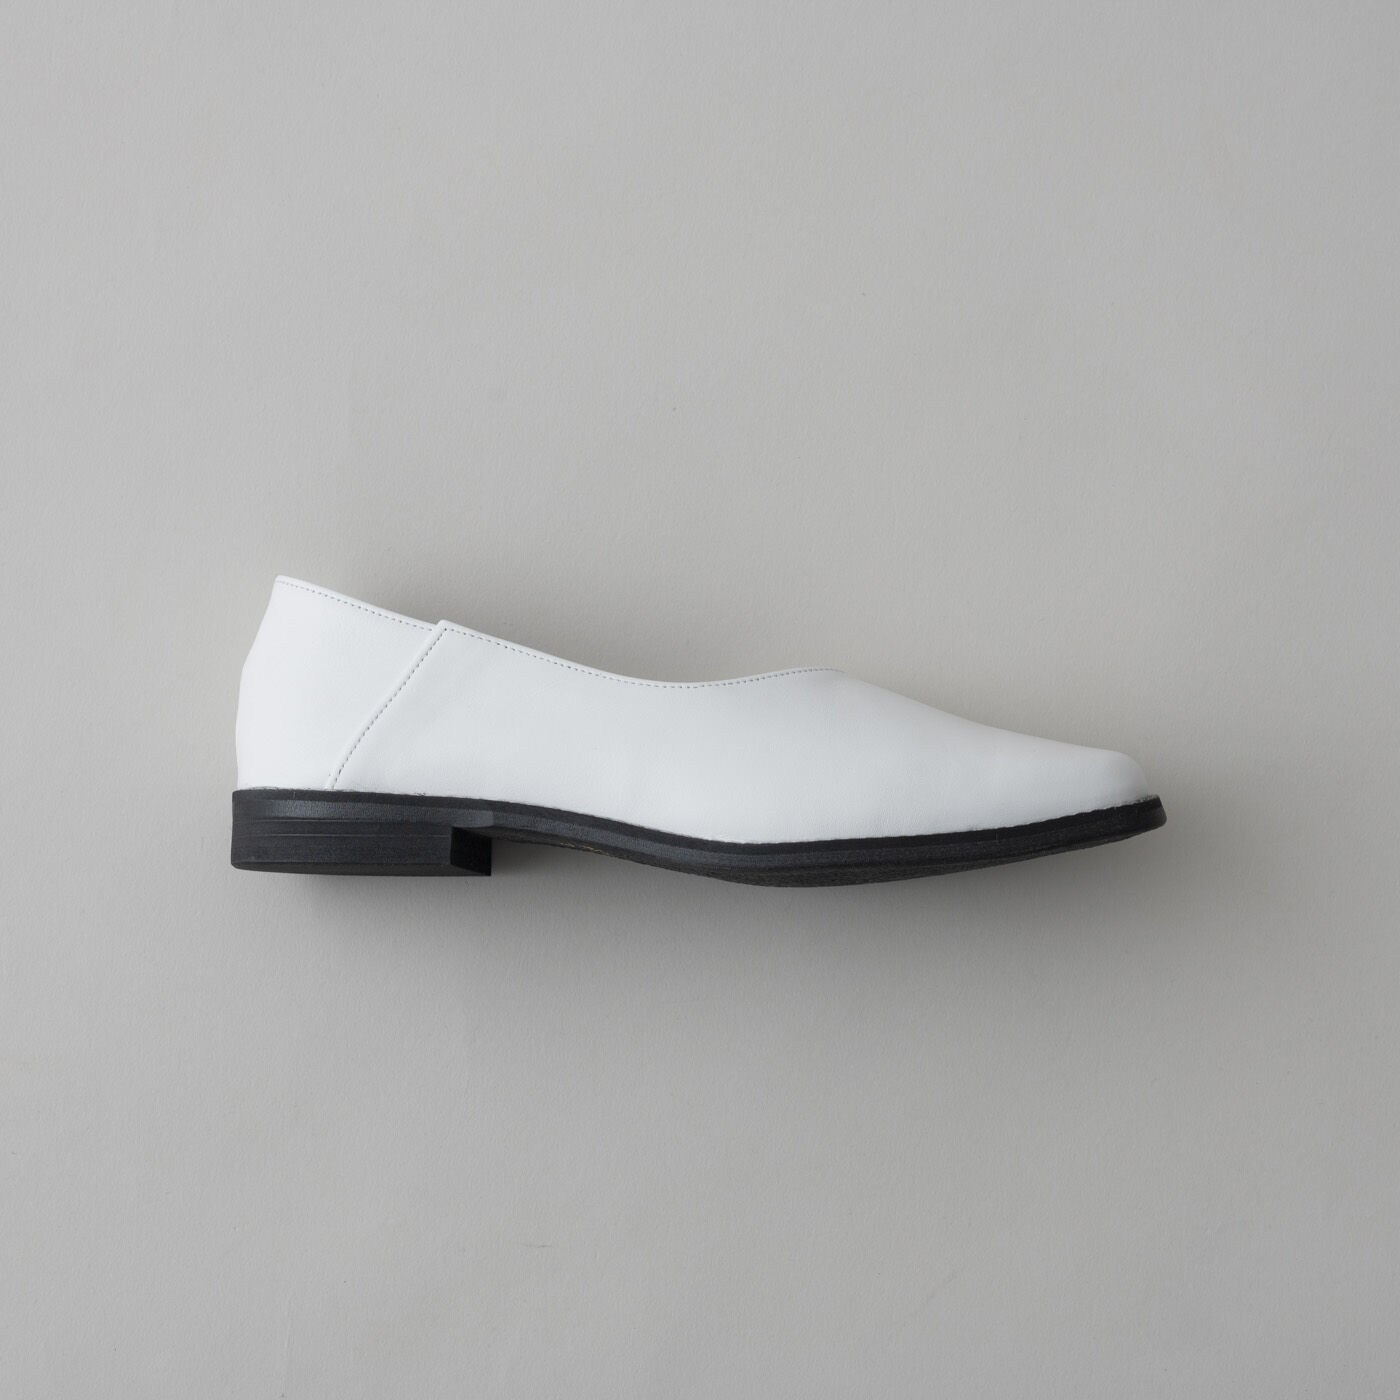 ＆Stories|長田の靴メーカーと作った　職人本革のスクエアノーズシューズ〈ホワイト〉|美しいフォルムと、スニーカーのような履き心地は、職人さんのこだわりのたまもの。